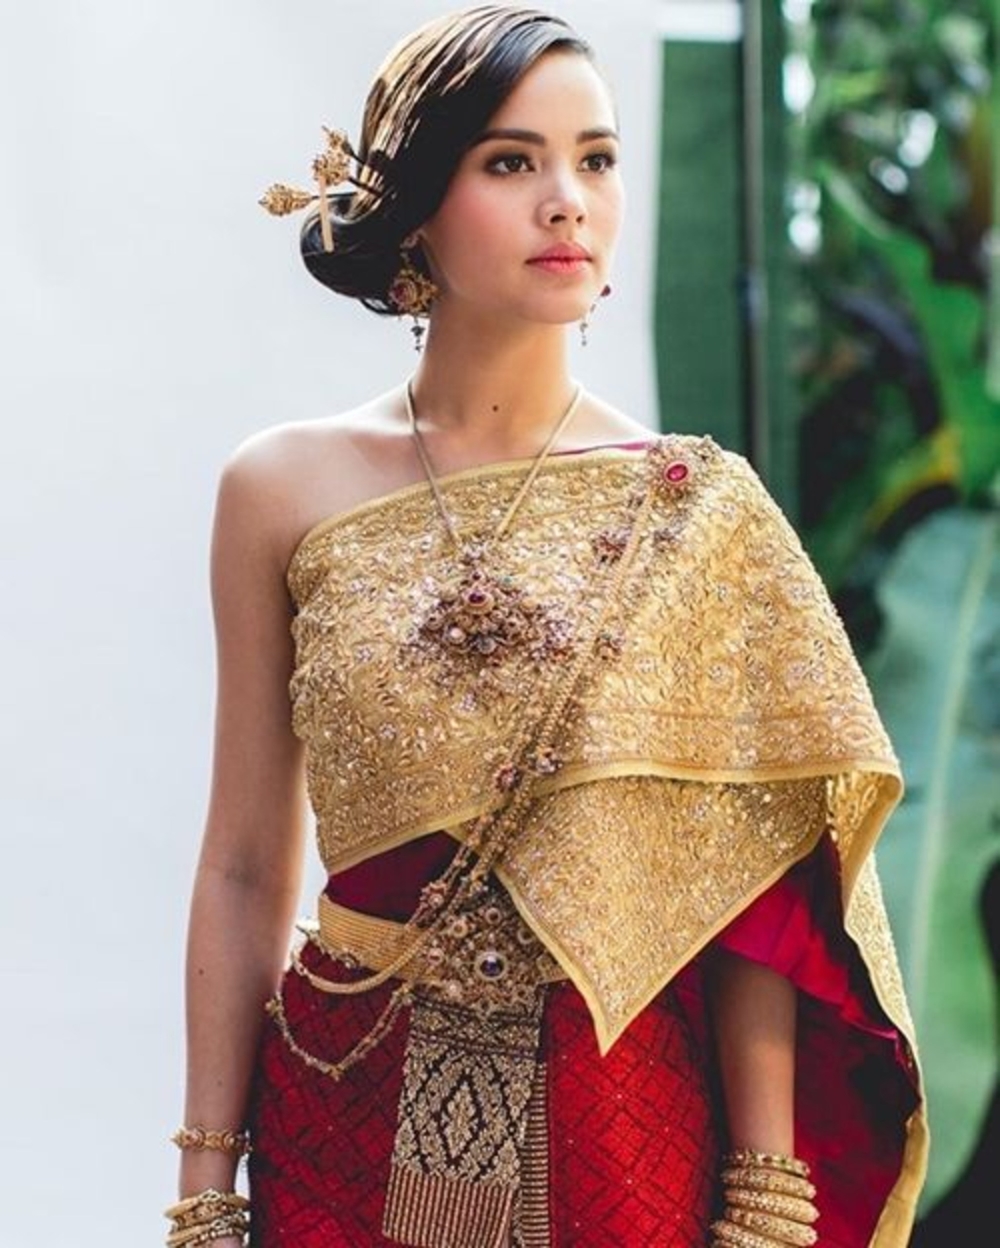 Loạt mỹ nhân Thái trong trang phục truyền thống: Baifern, Mai Davika đẹp không góc chết